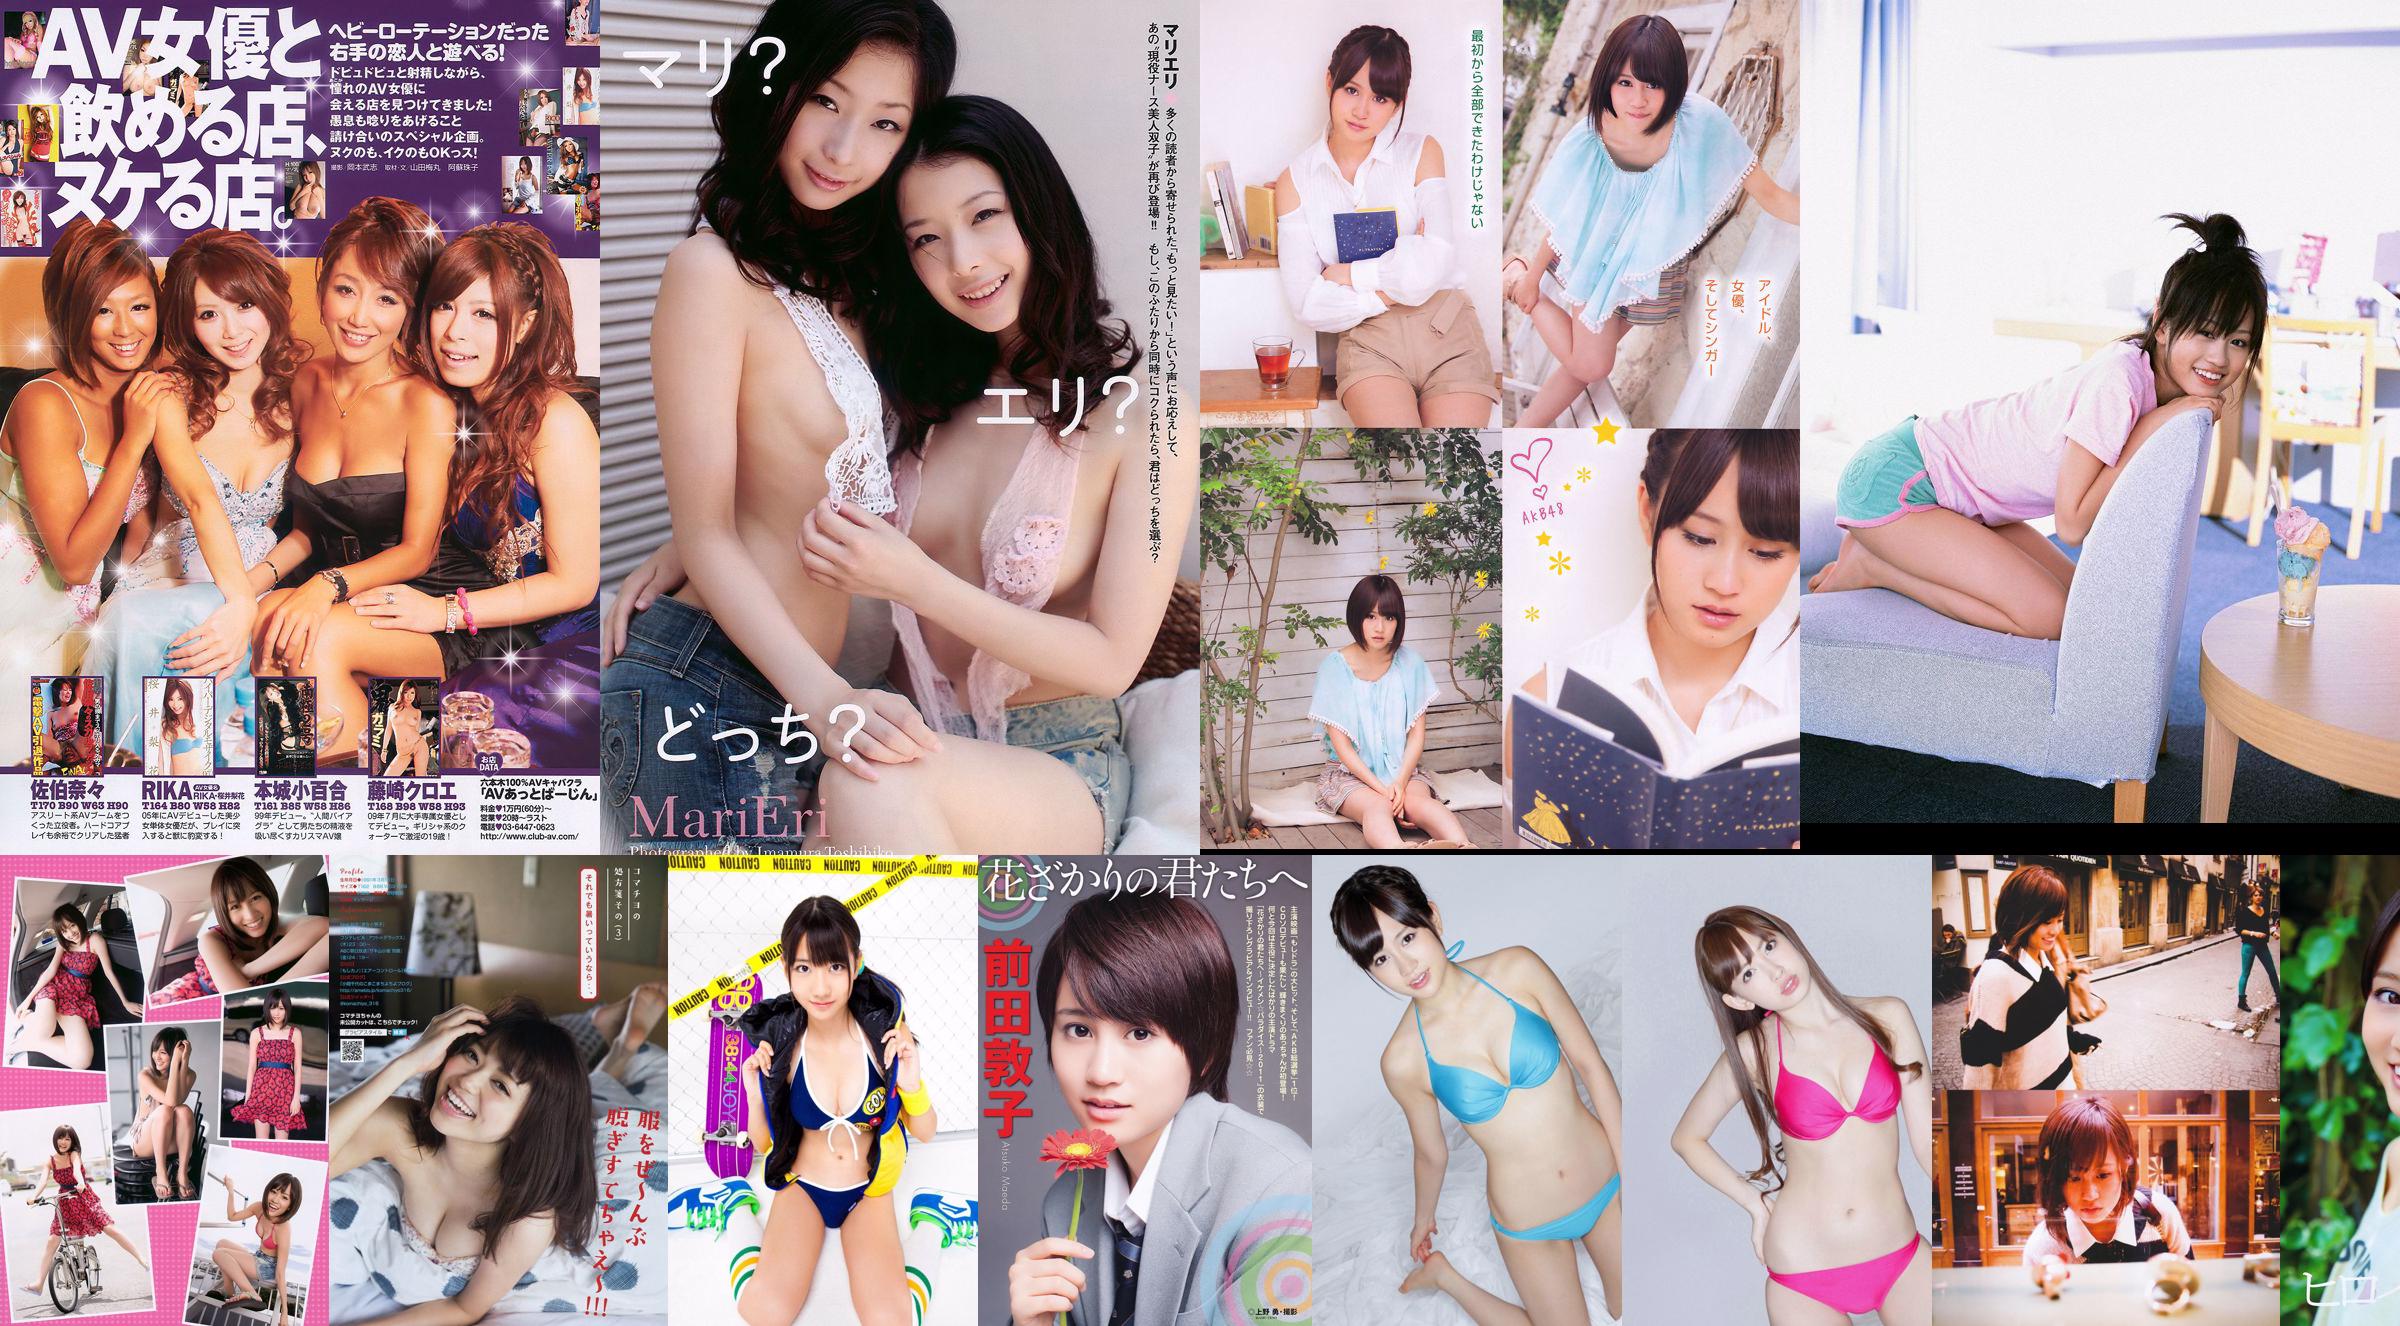 Atsuko Maeda Momoiro Clover Z [Weekly Young Jump] 2012 No.30 Photo Magazine No.ae137e Page 4